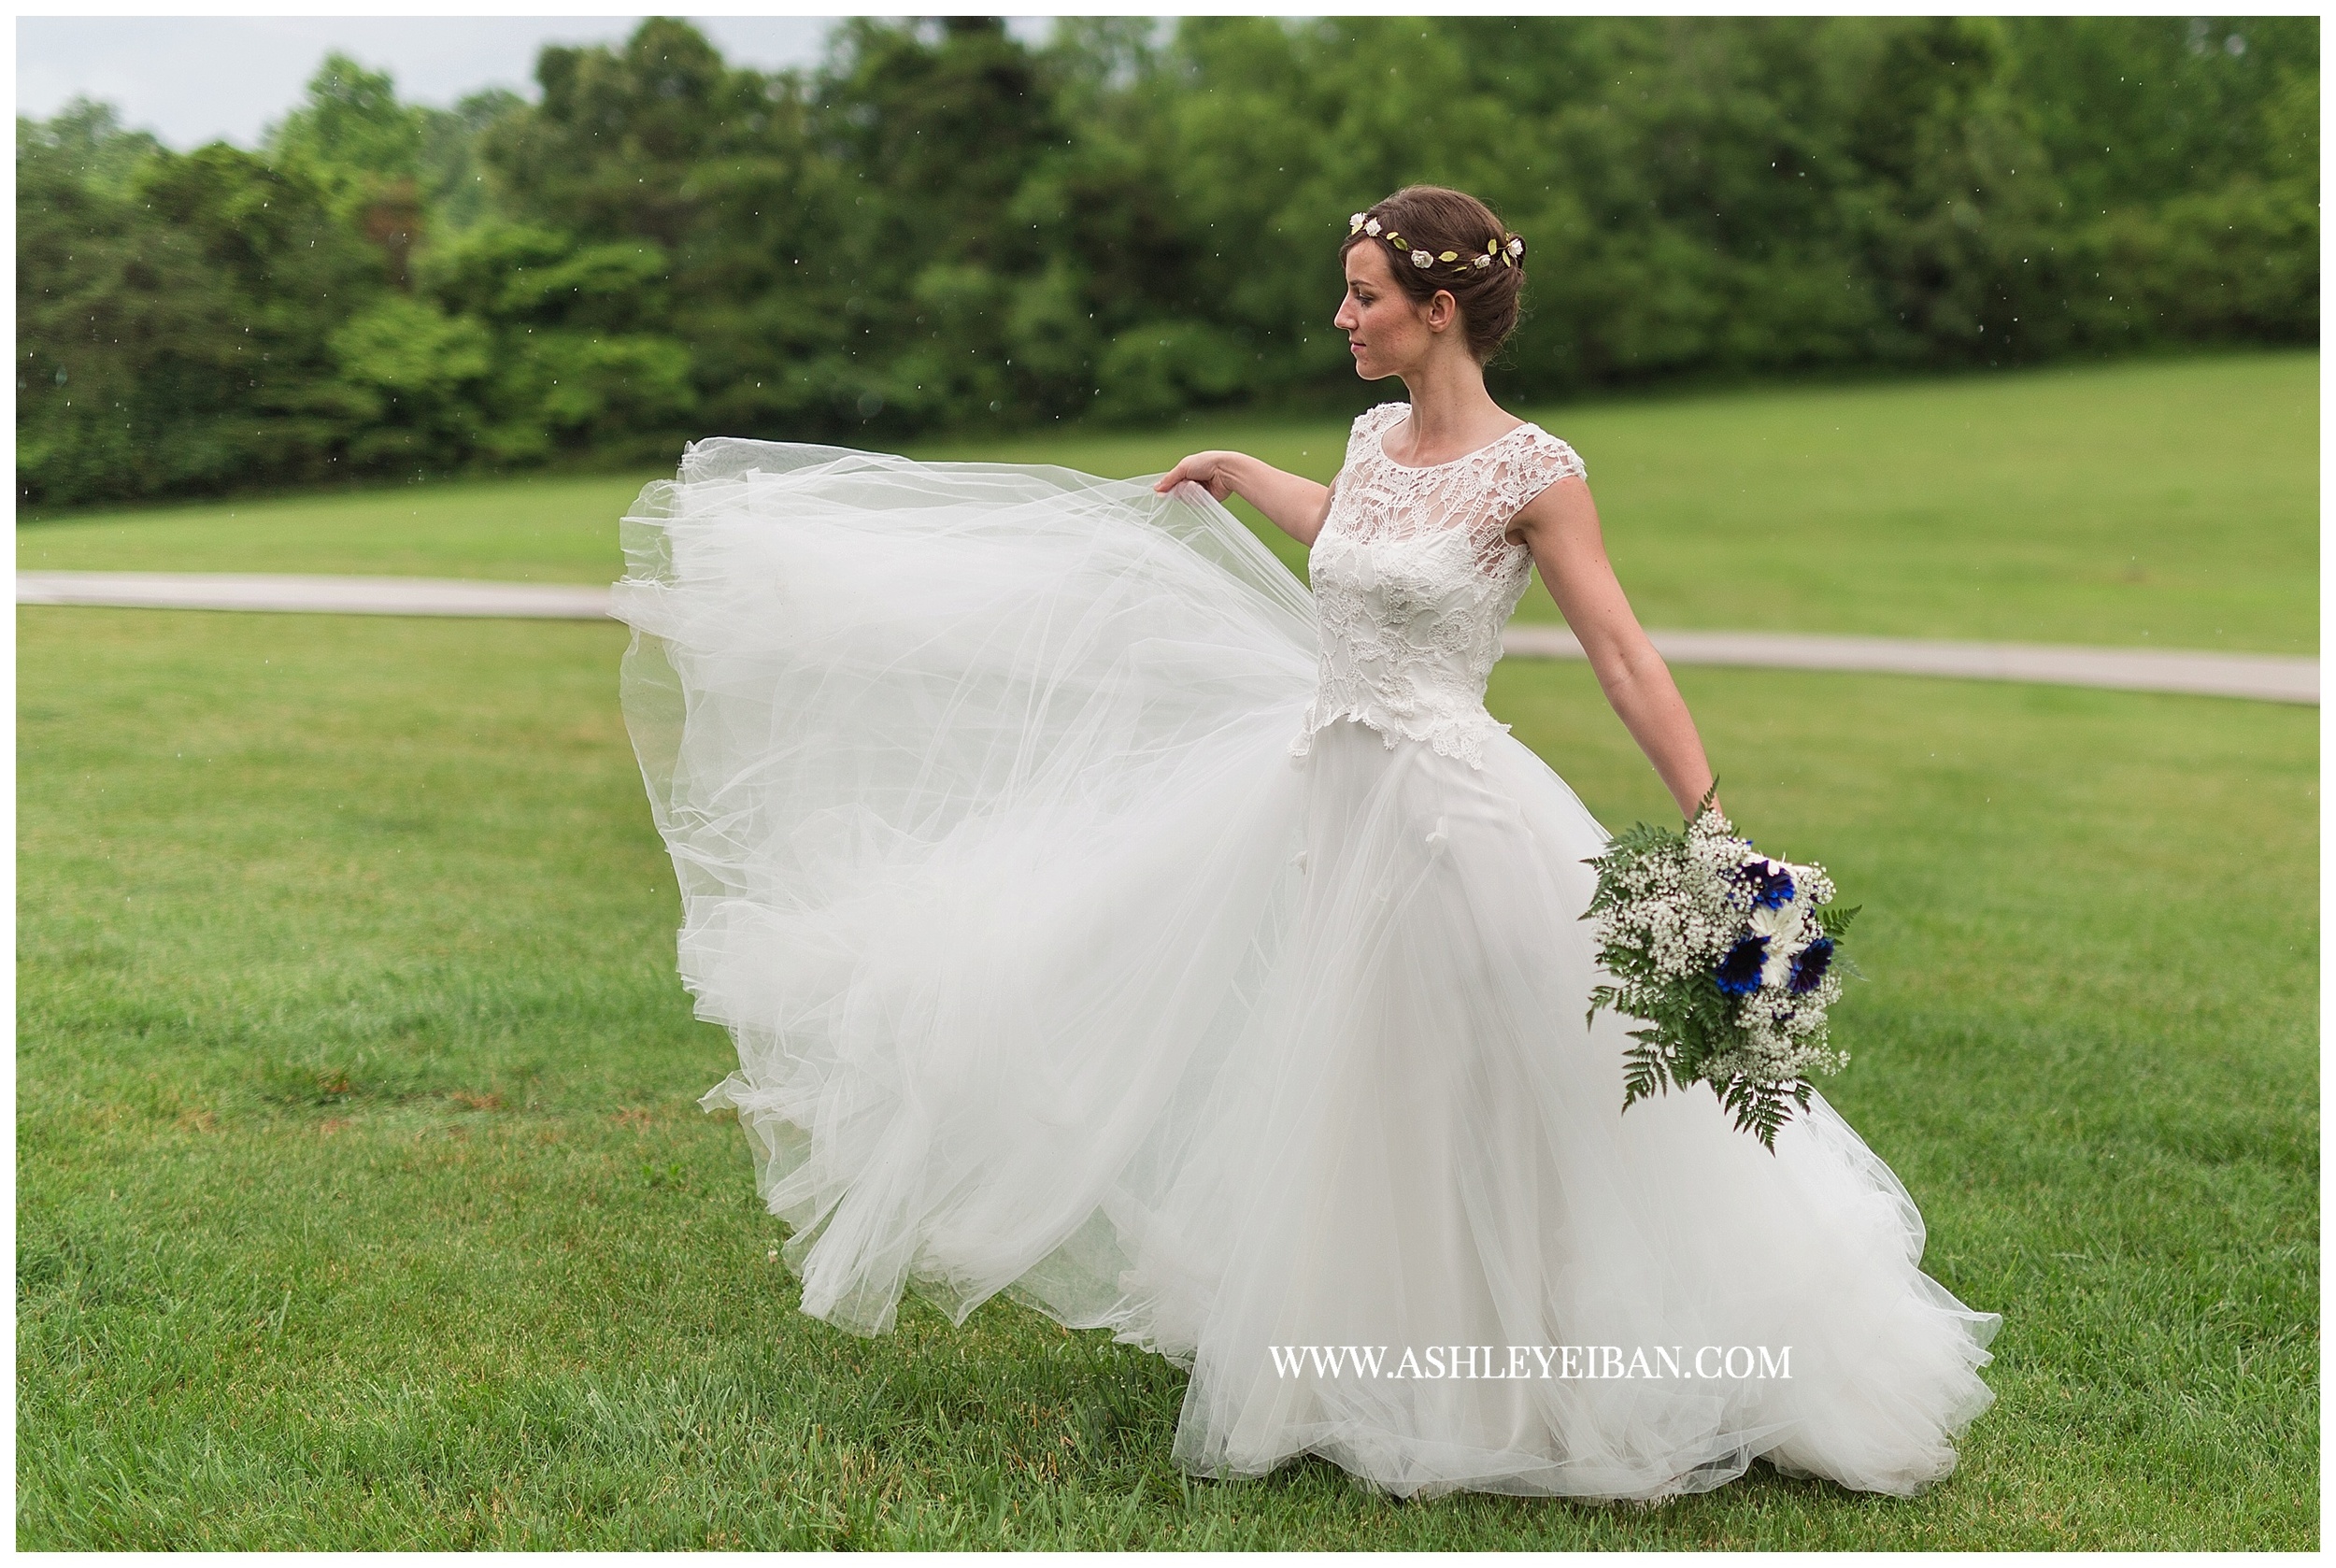 Lynchburg Wedding Photographer || Backyard Virginia Wedding || Ashley Eiban Photography || www.ashleyeiban.com